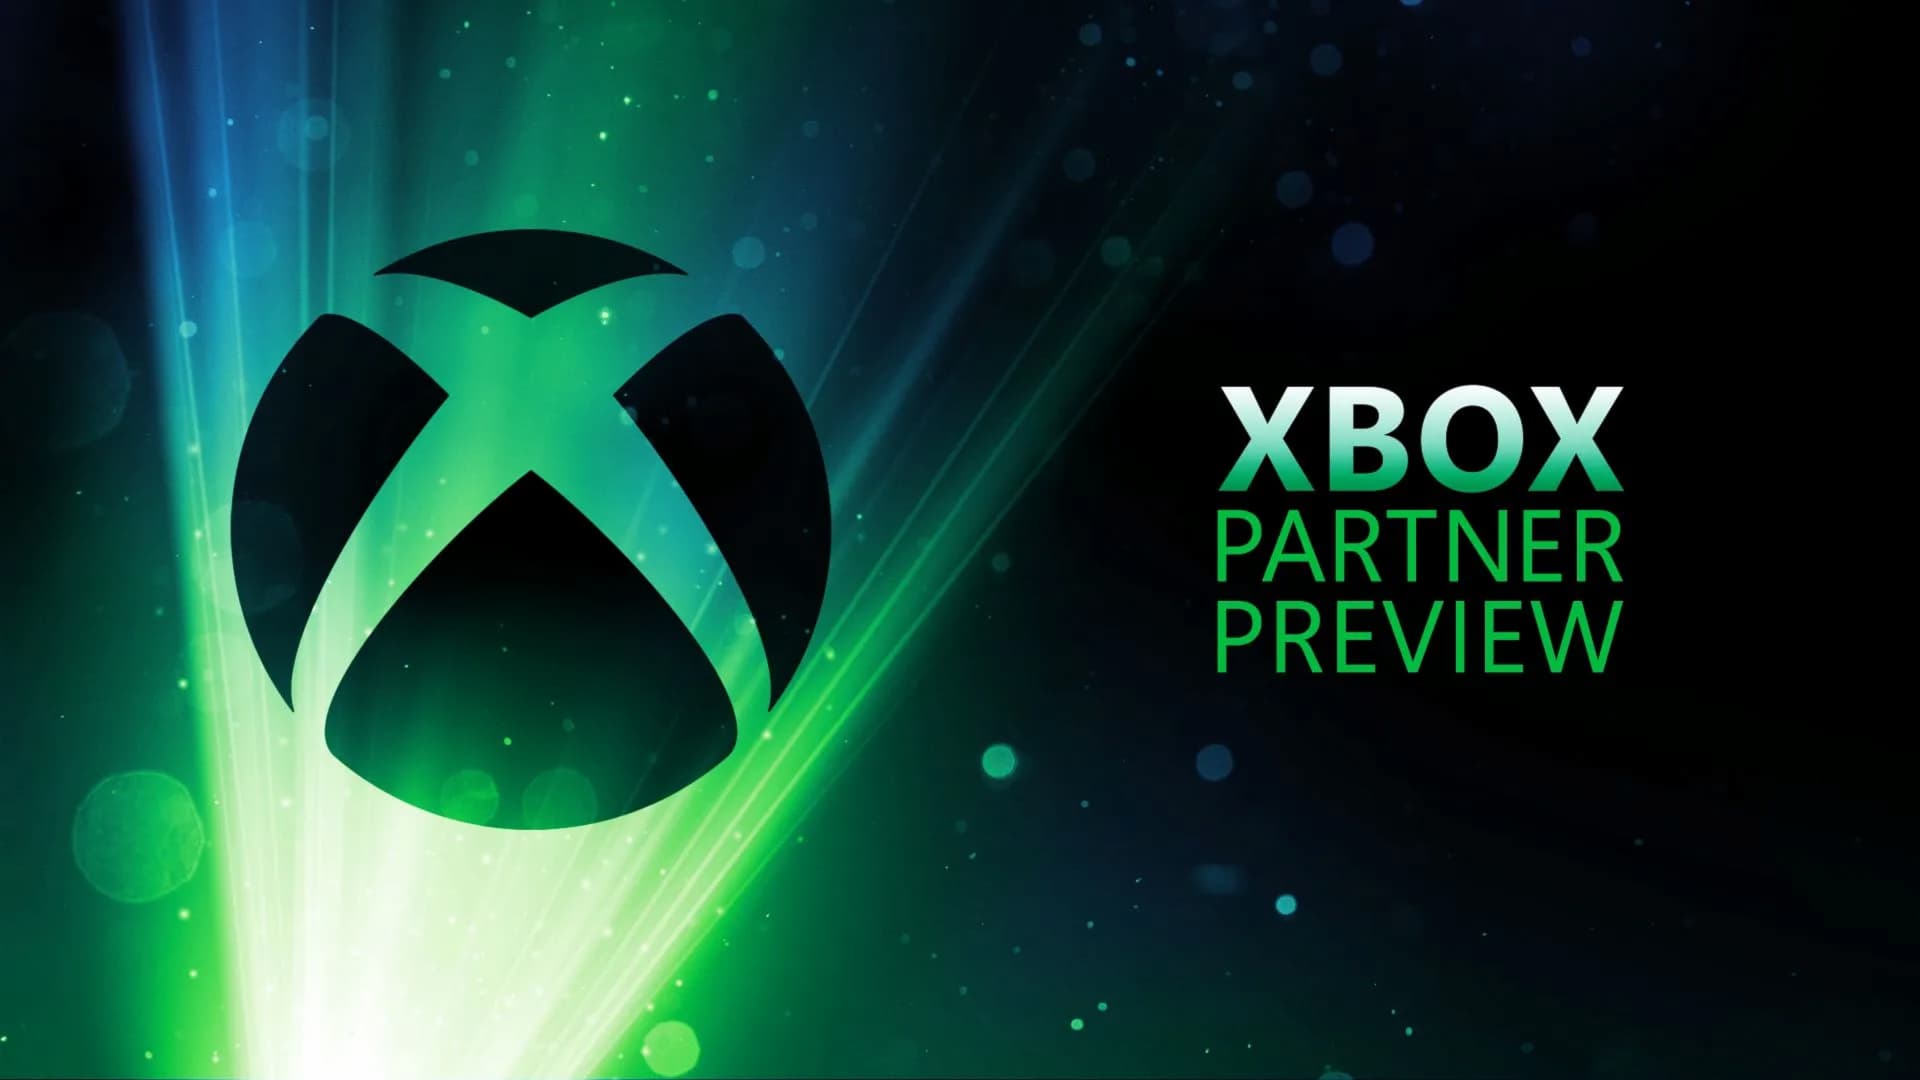 Próxima semana no Xbox: 13 a 16 de outubro - Xbox Wire em Português